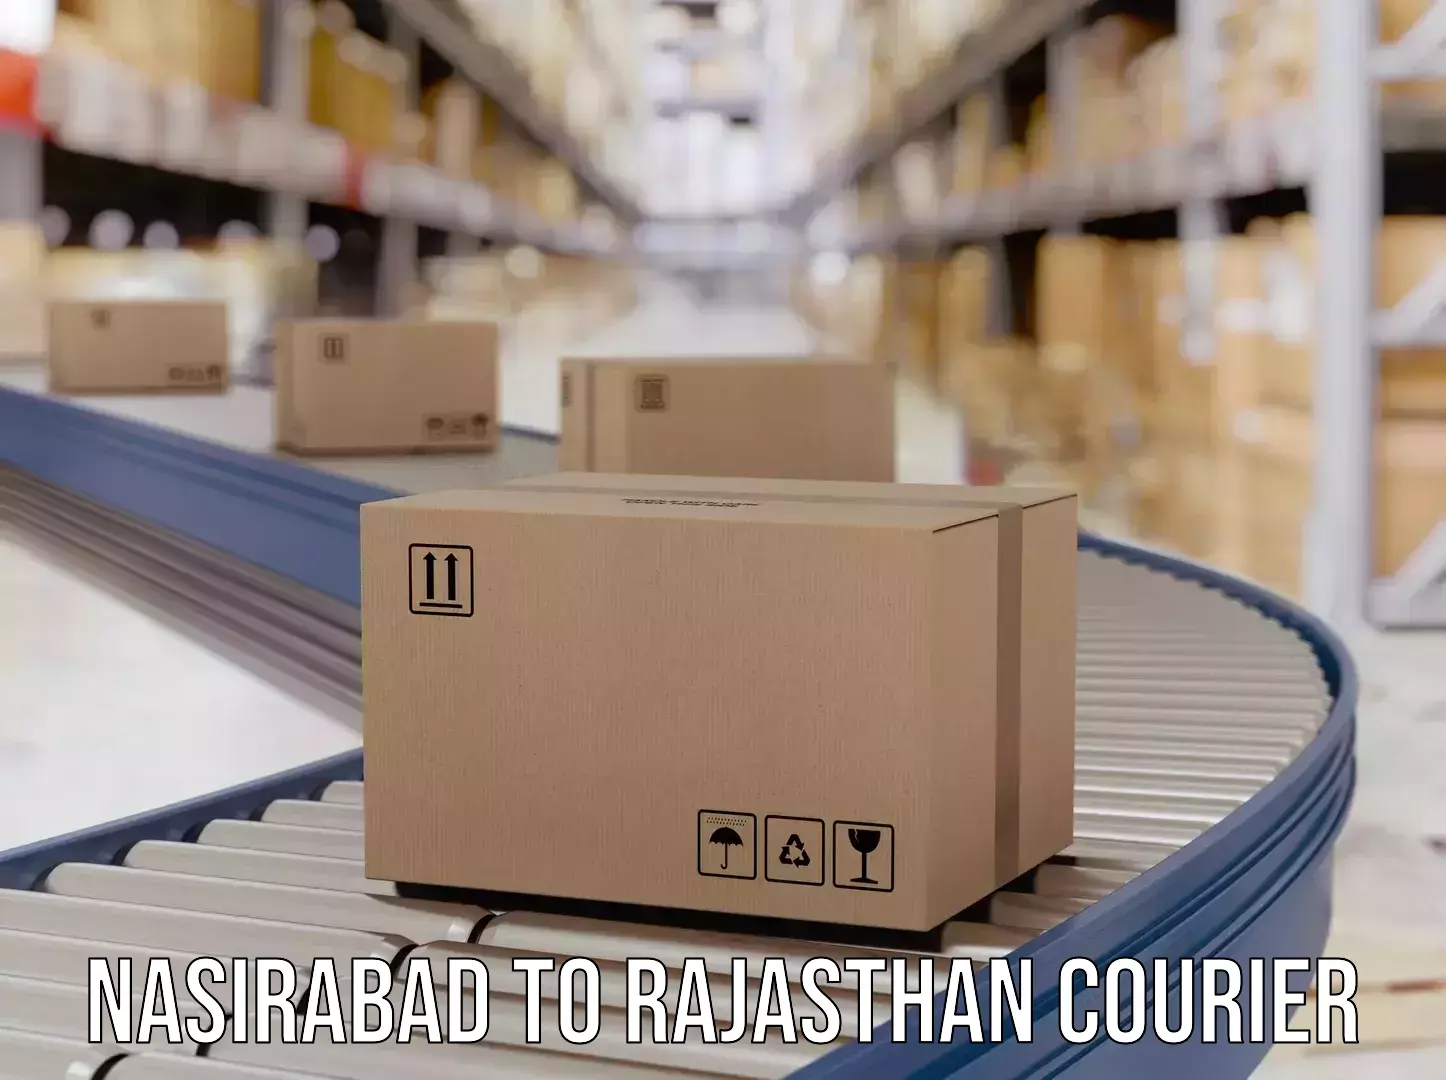 Global shipping solutions Nasirabad to Mathania